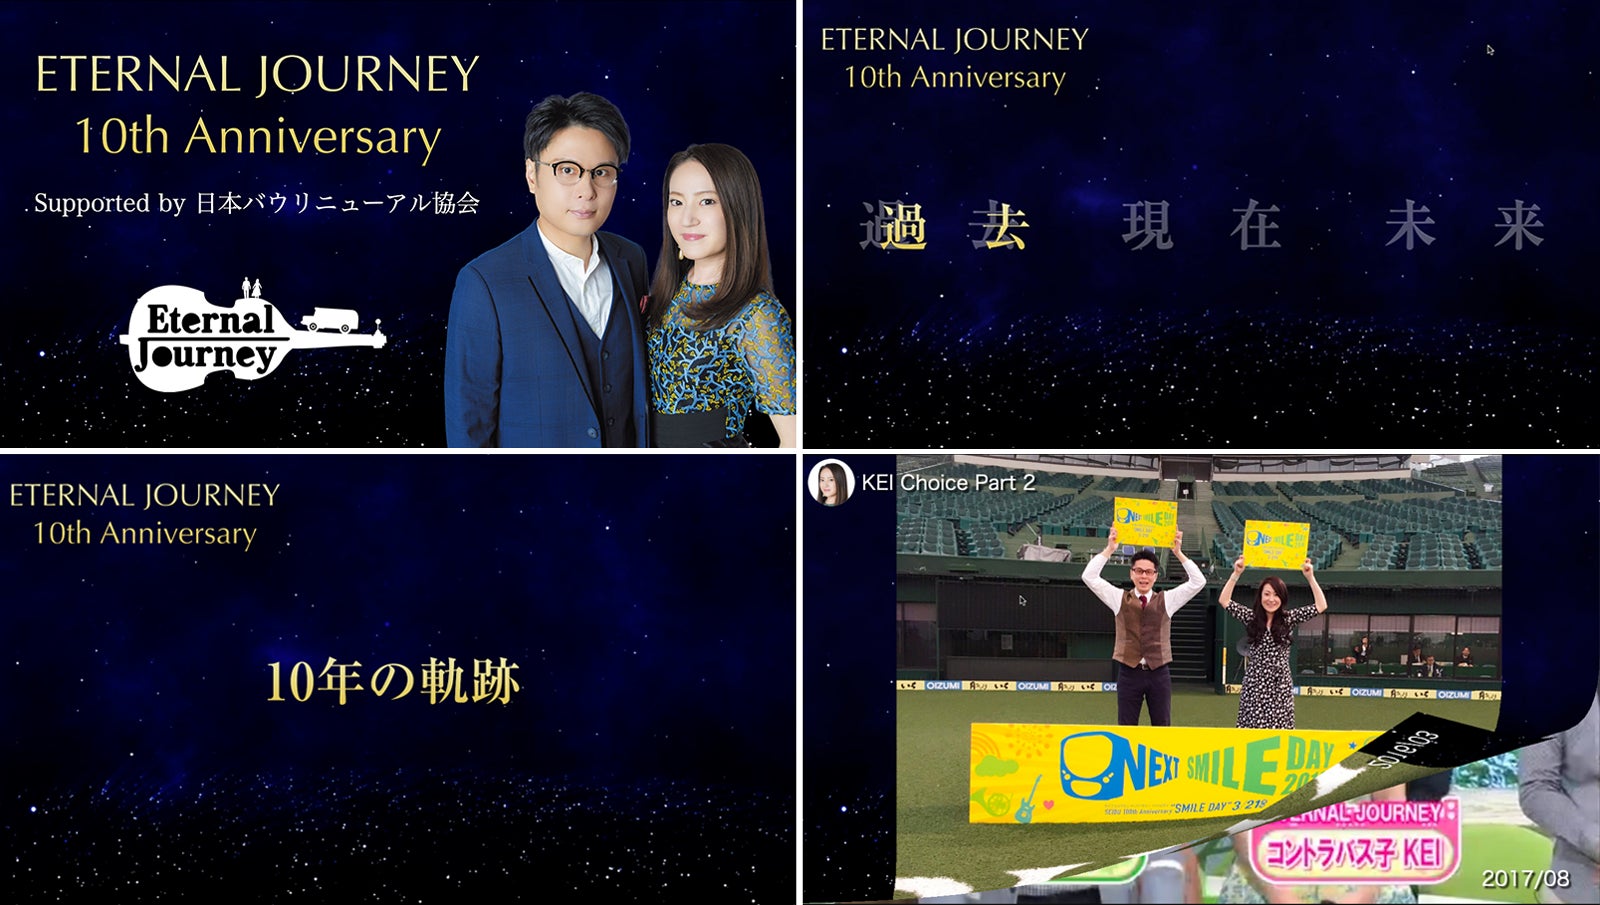 日本バウリニューアル協会公式スペシャルアンバサダー「ETERNAL JOURNEY」結成10周年ライブにてバウリニューアルセレモニーを開催！